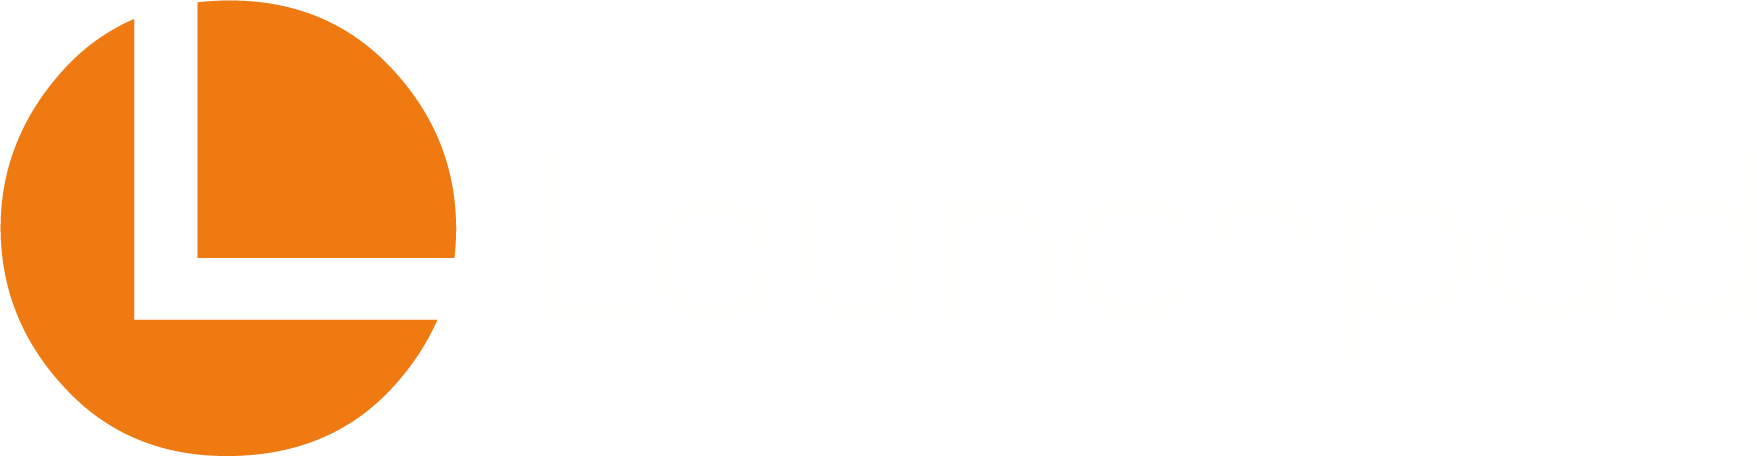 Launchpad orange logo on white background